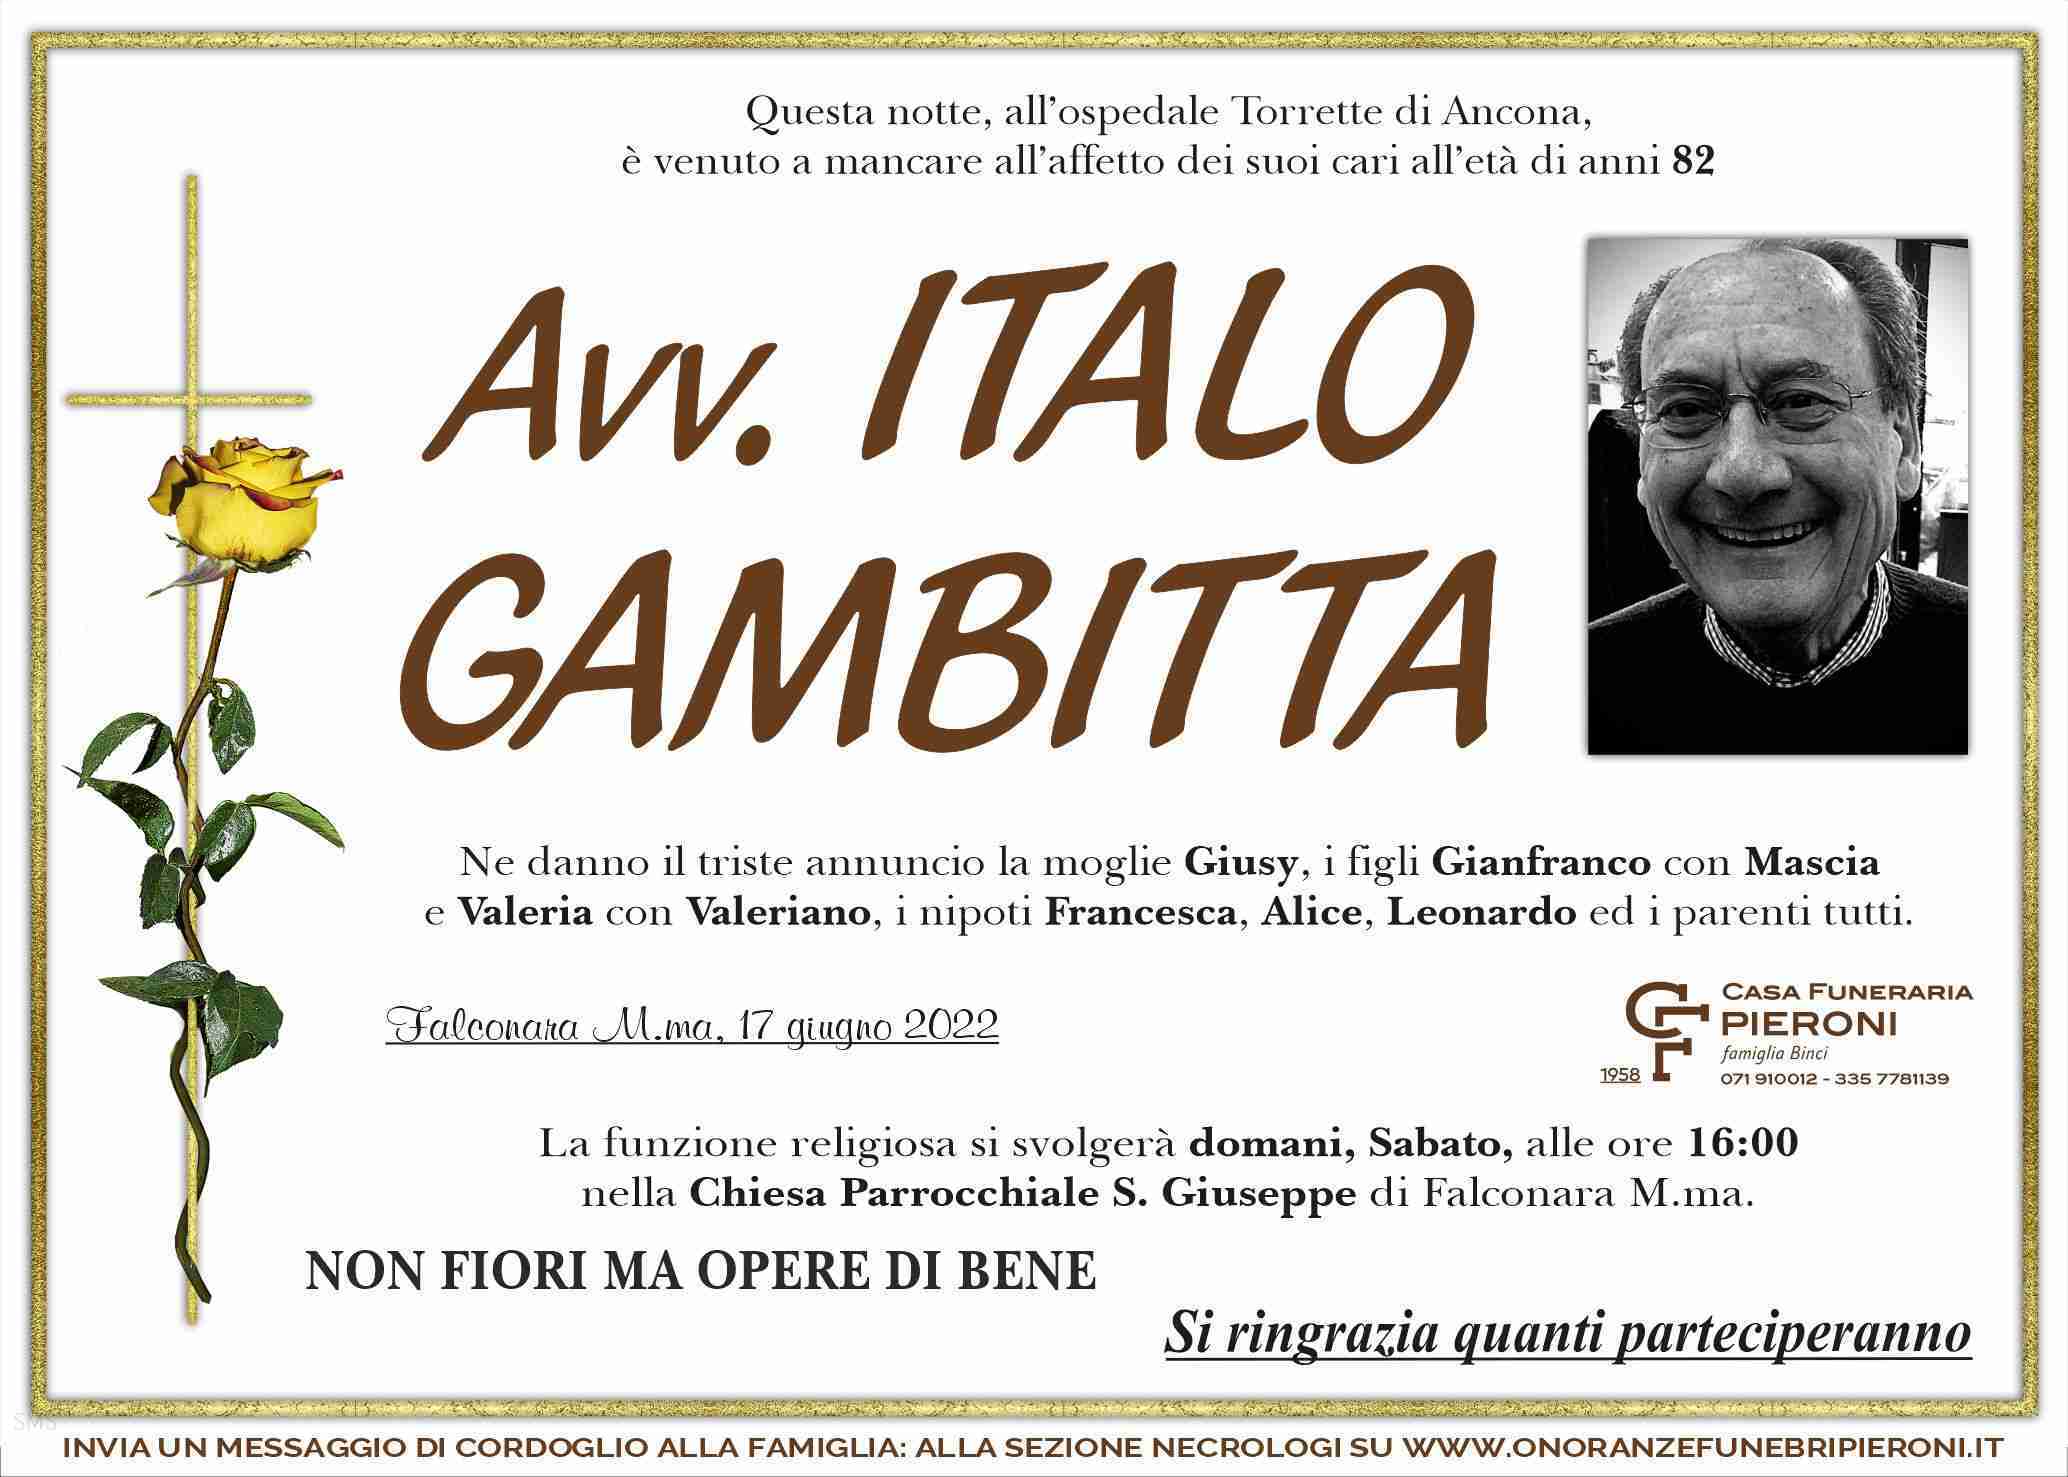 Italo Gambitta